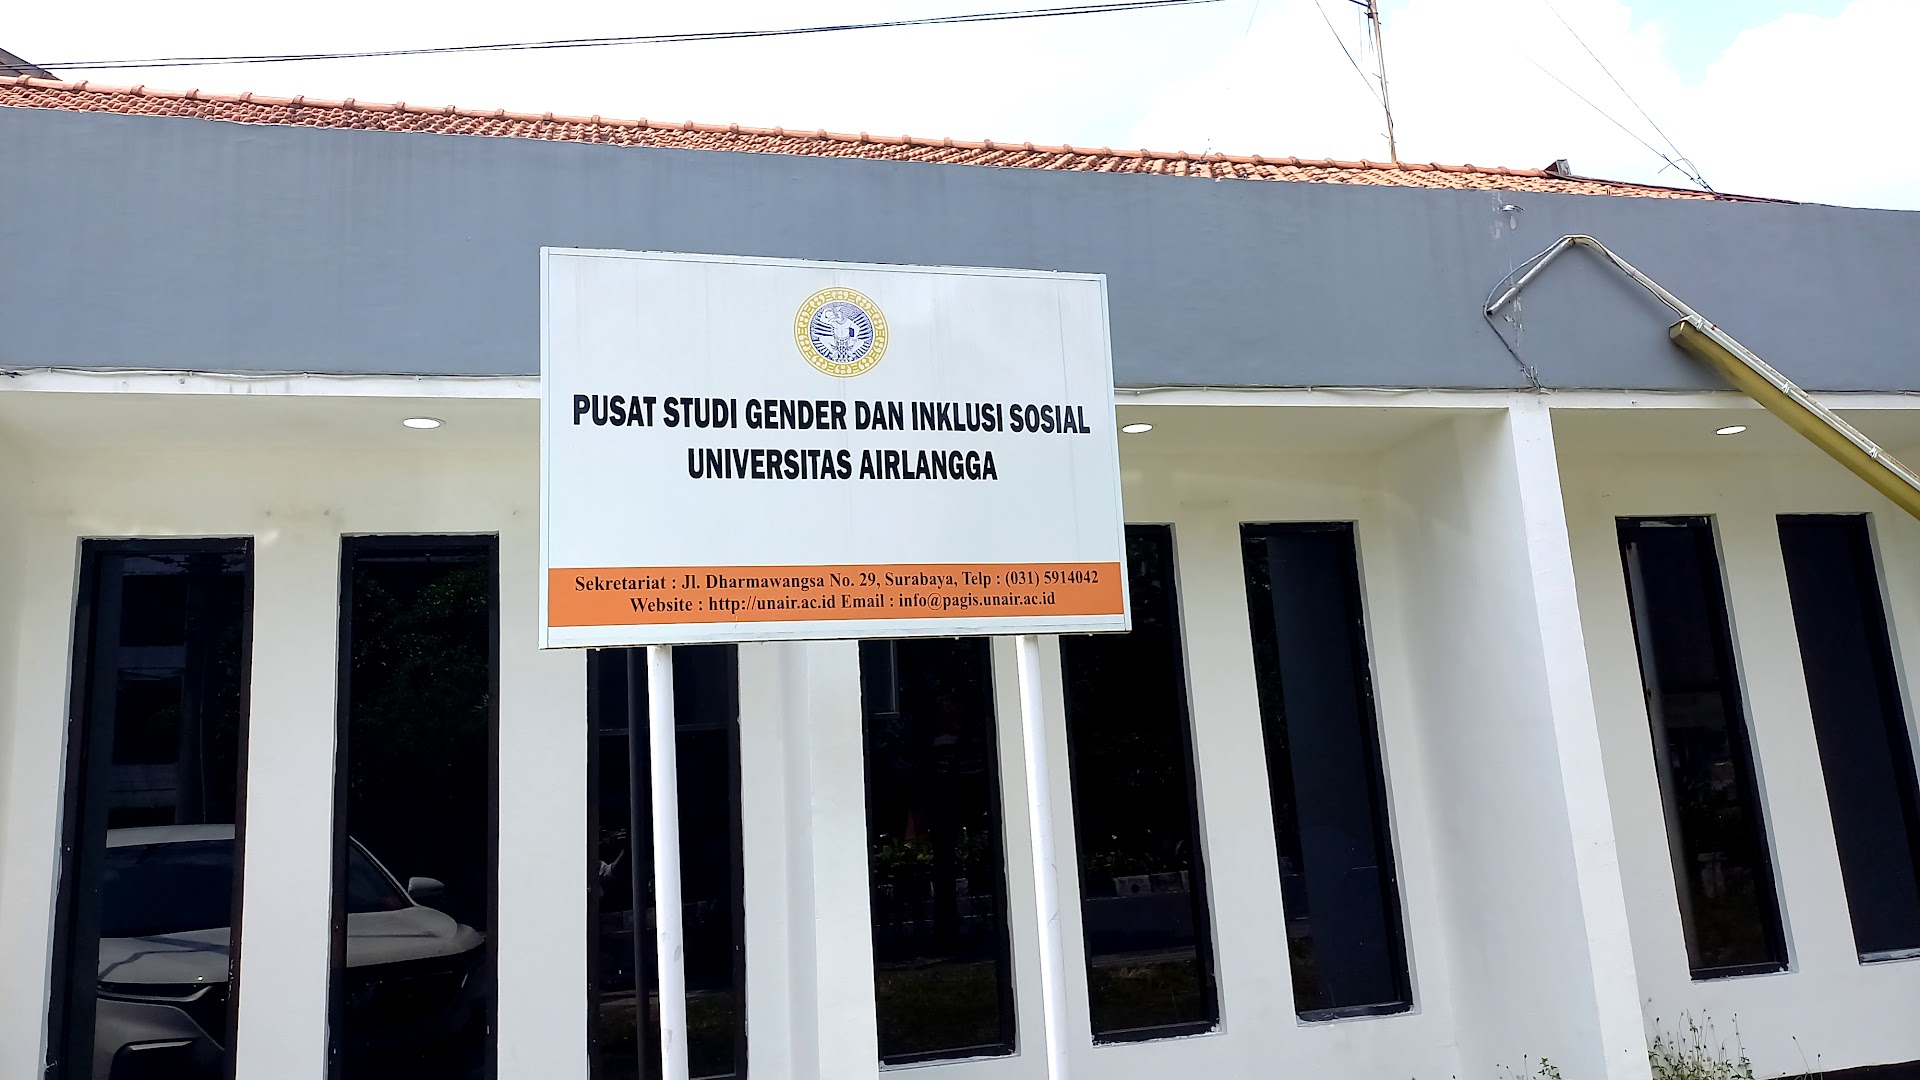 Gambar Pusat Studi Gender Dan Inklusi Sosial Universitas Airlangga